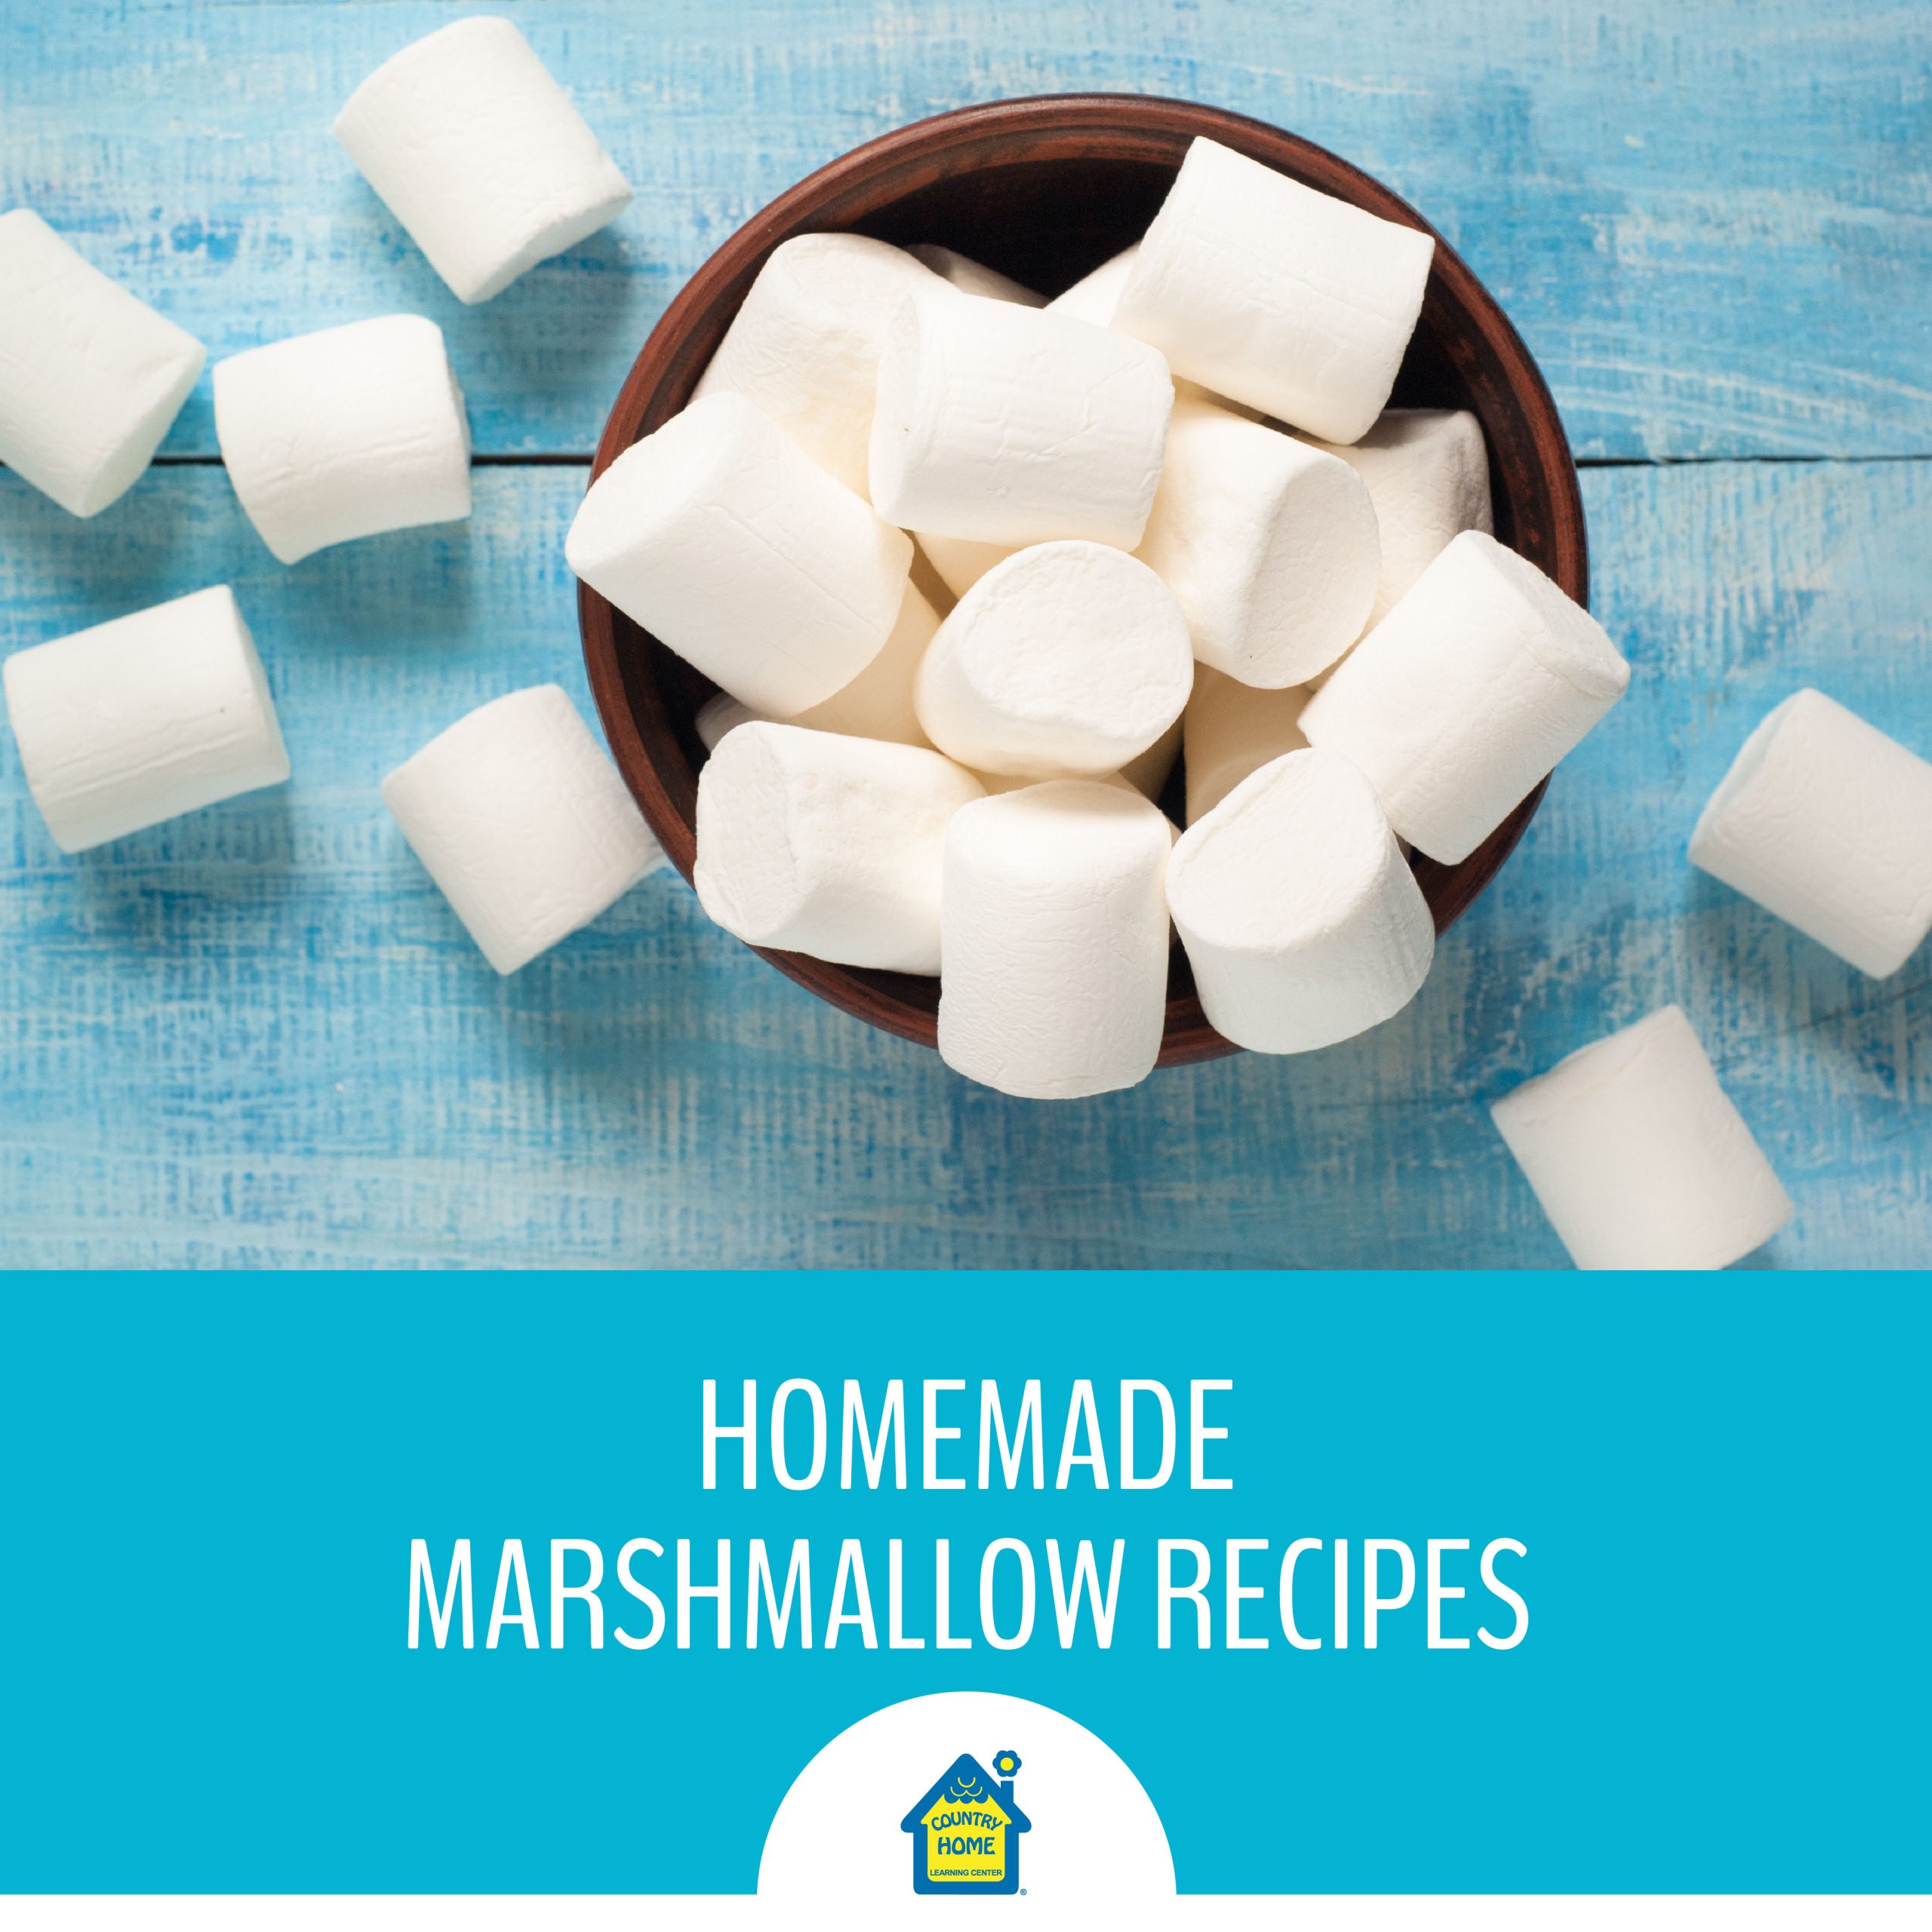 Homemade Marshmallow Recipes